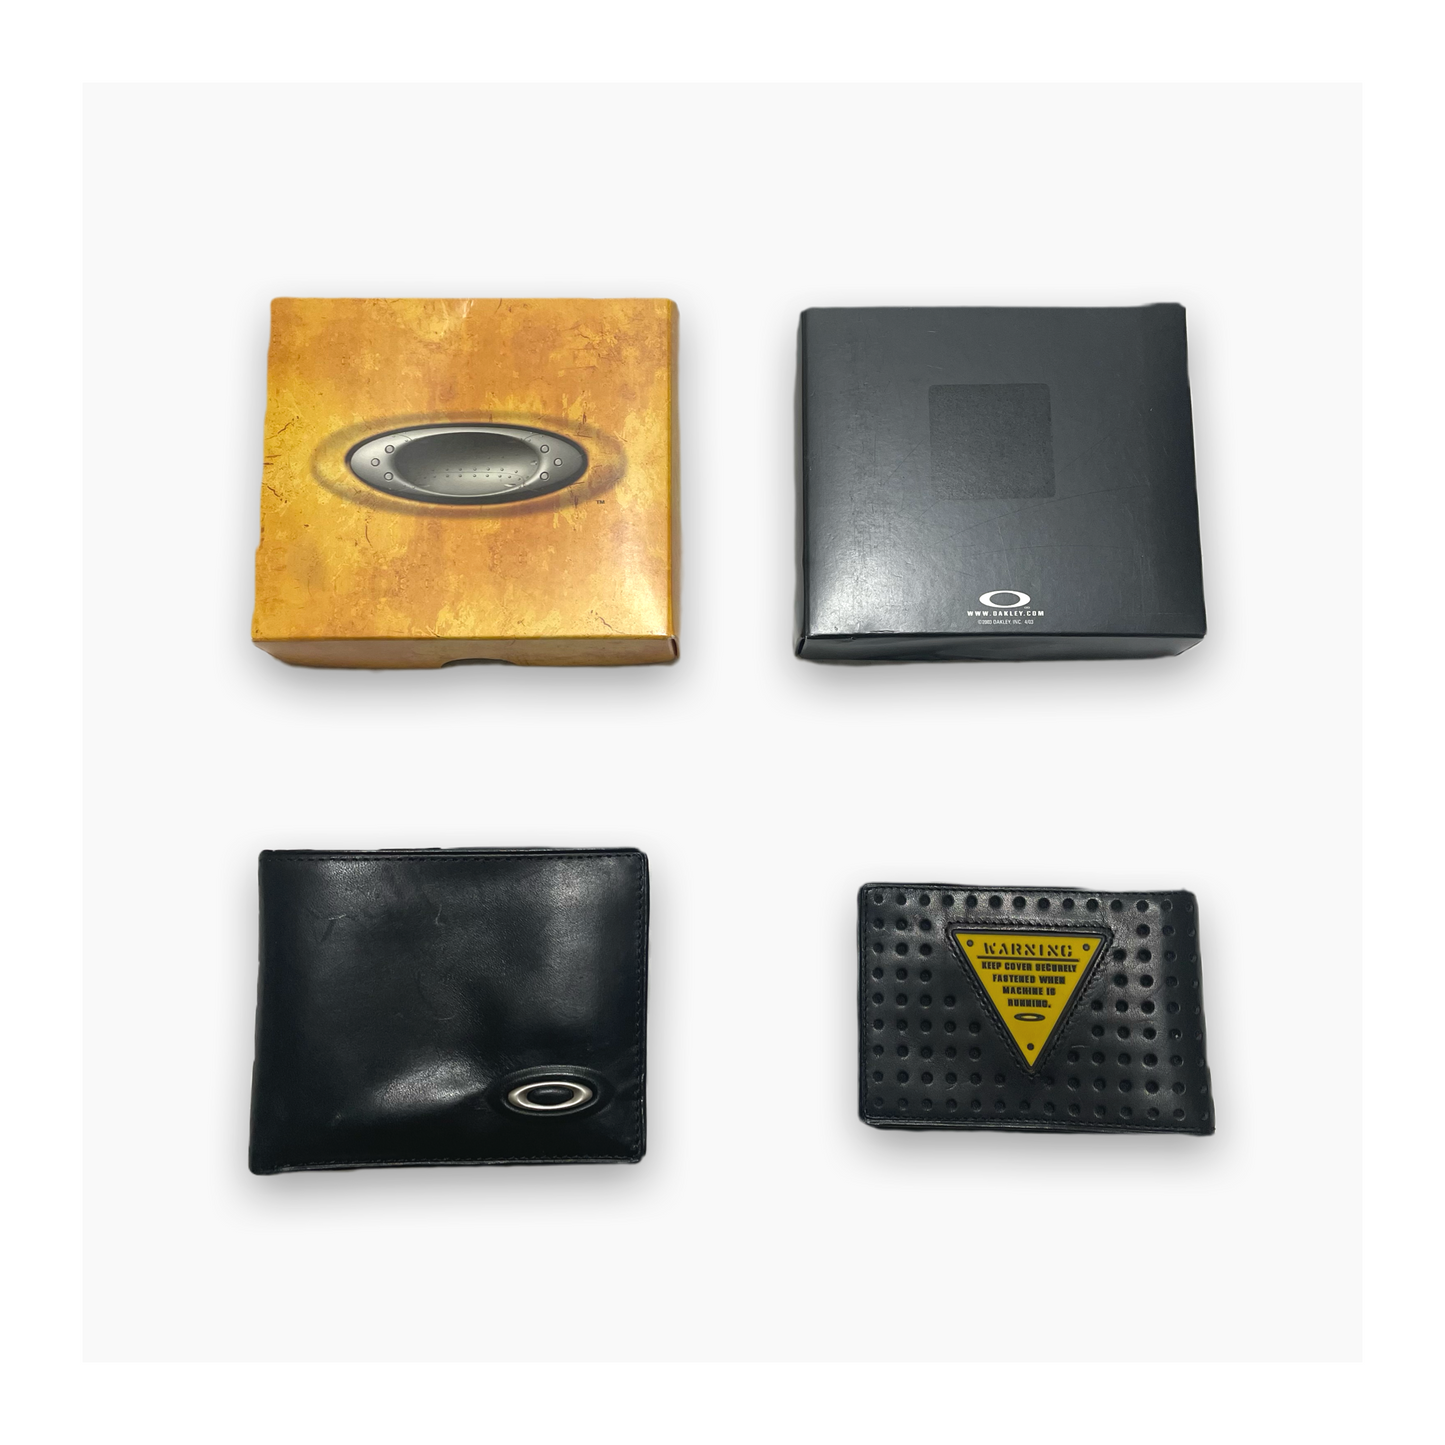 OAKLEY Leather Wallet